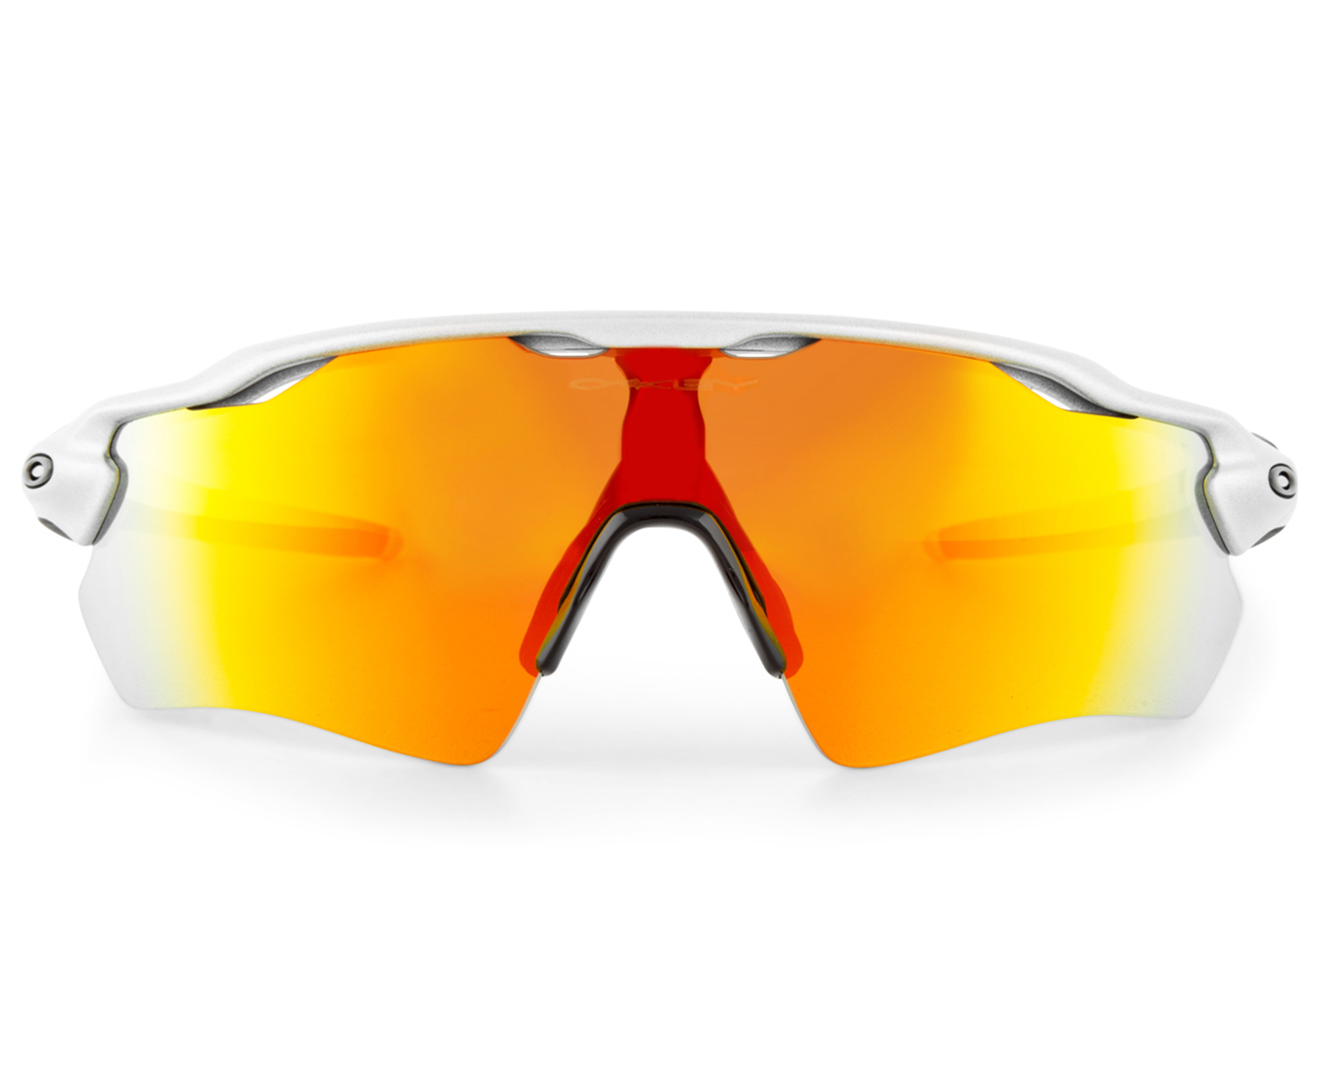 Oakley Men's Radar EV Path Sunglasses - Silver/Fire | Catch.co.nz